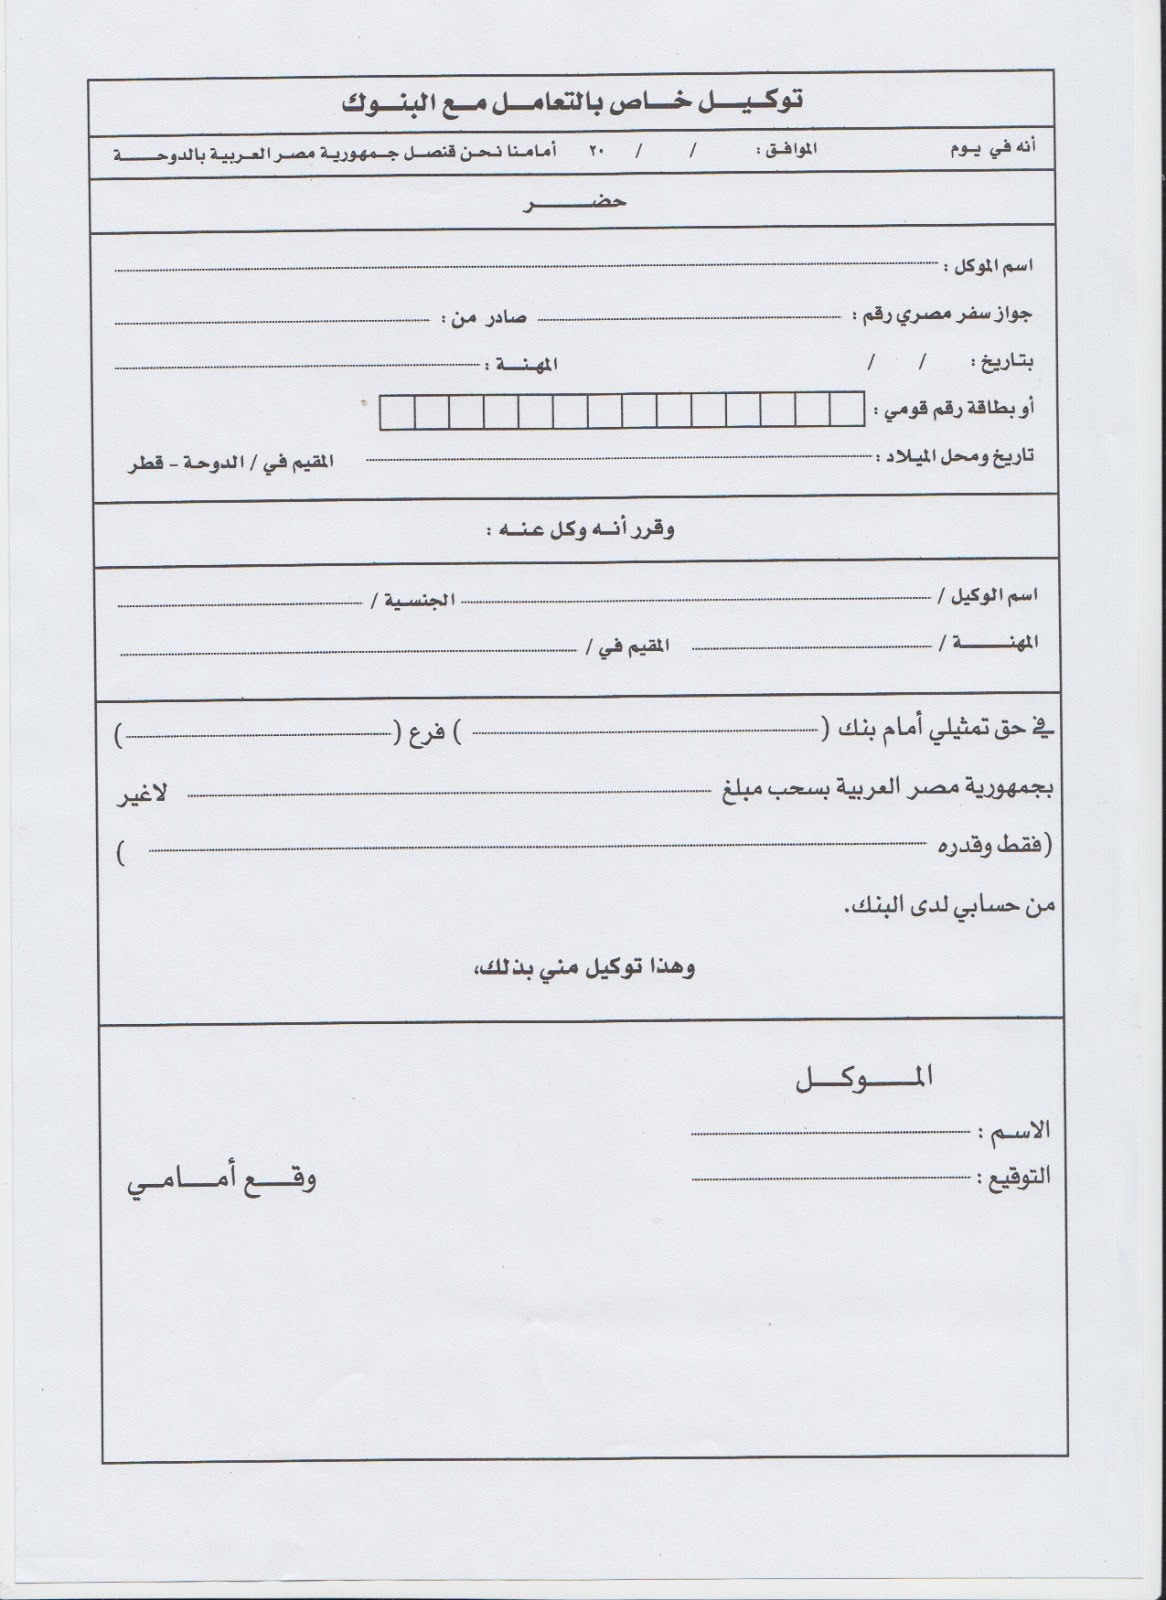 نموذج عقد زواج شرعي قطري